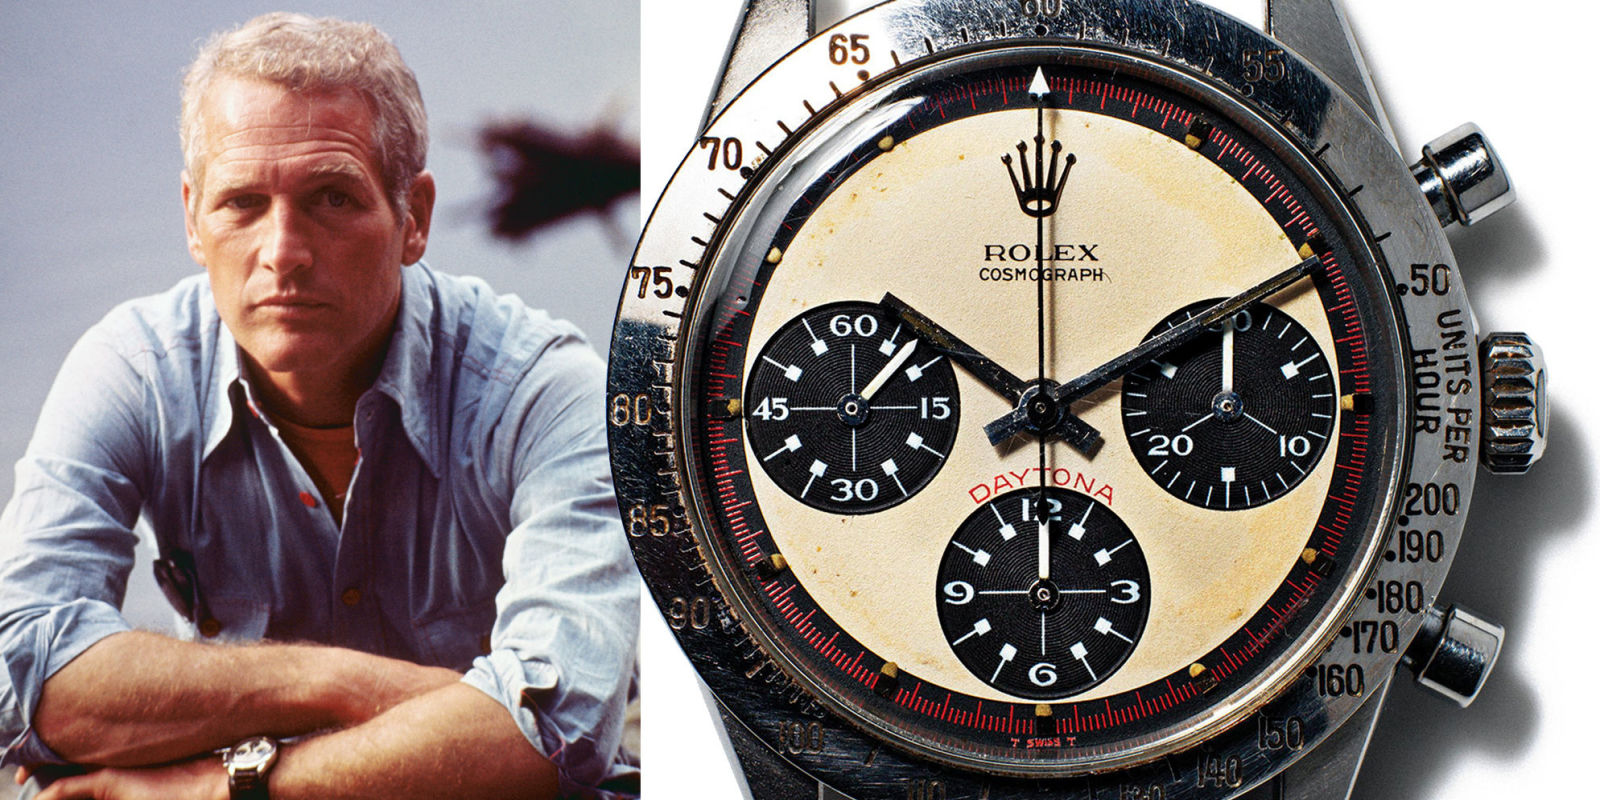 Perchè il Rolex Daytona "Paul Newman" è cosi caro?